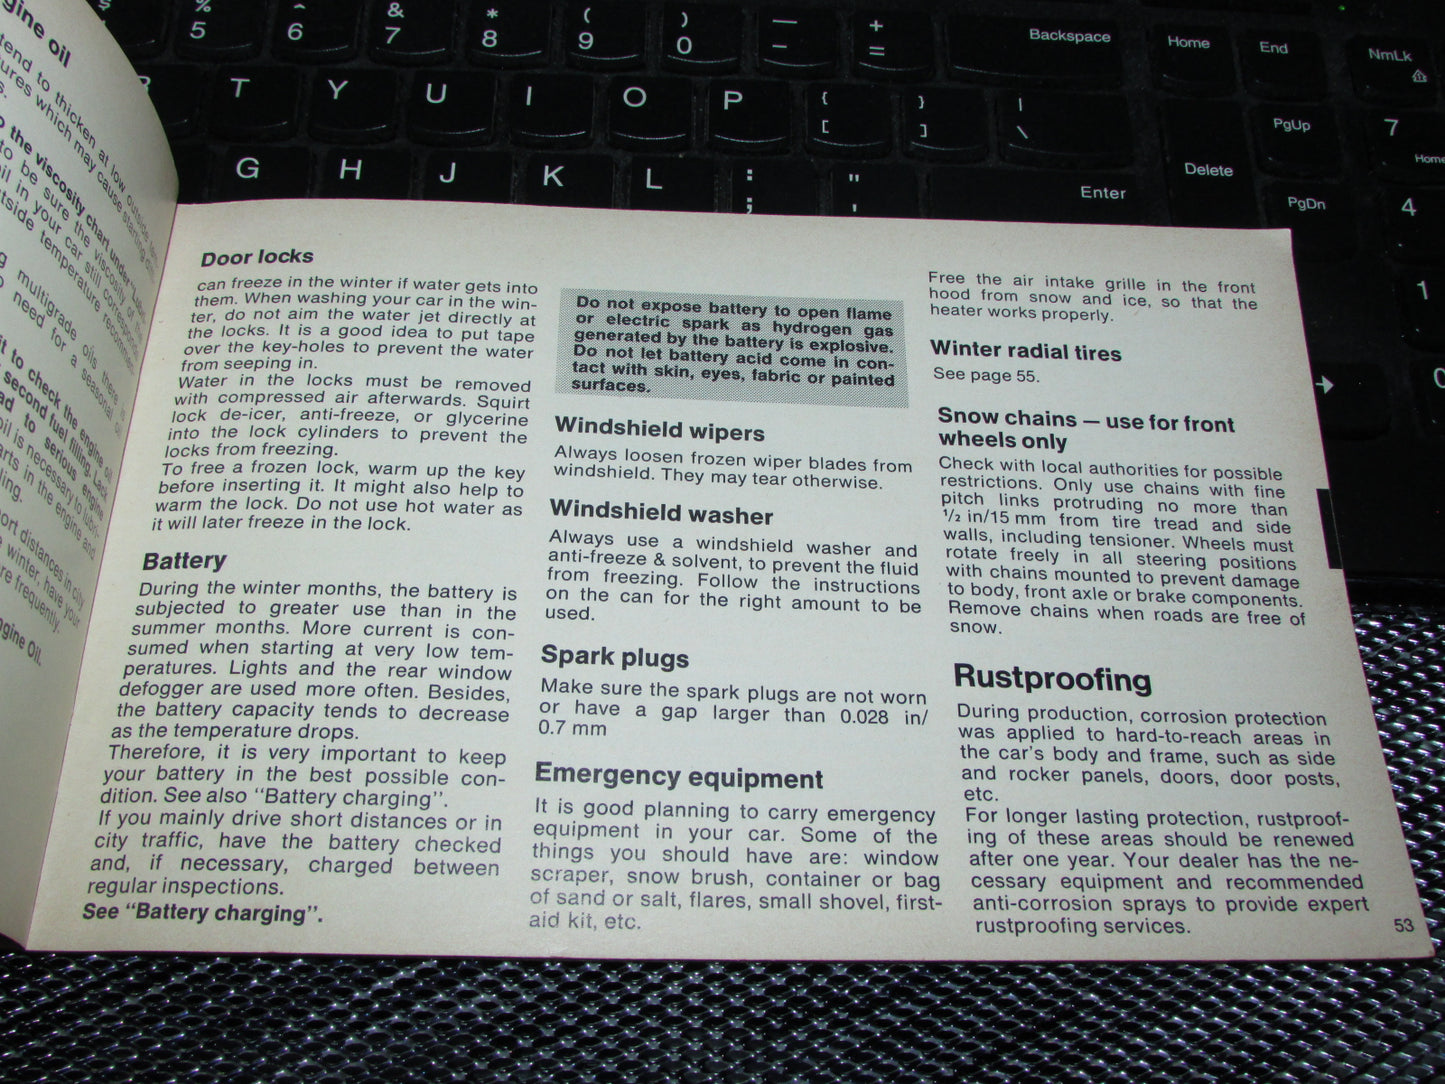 Volkswagen Rabbit (1978) Owners Manual